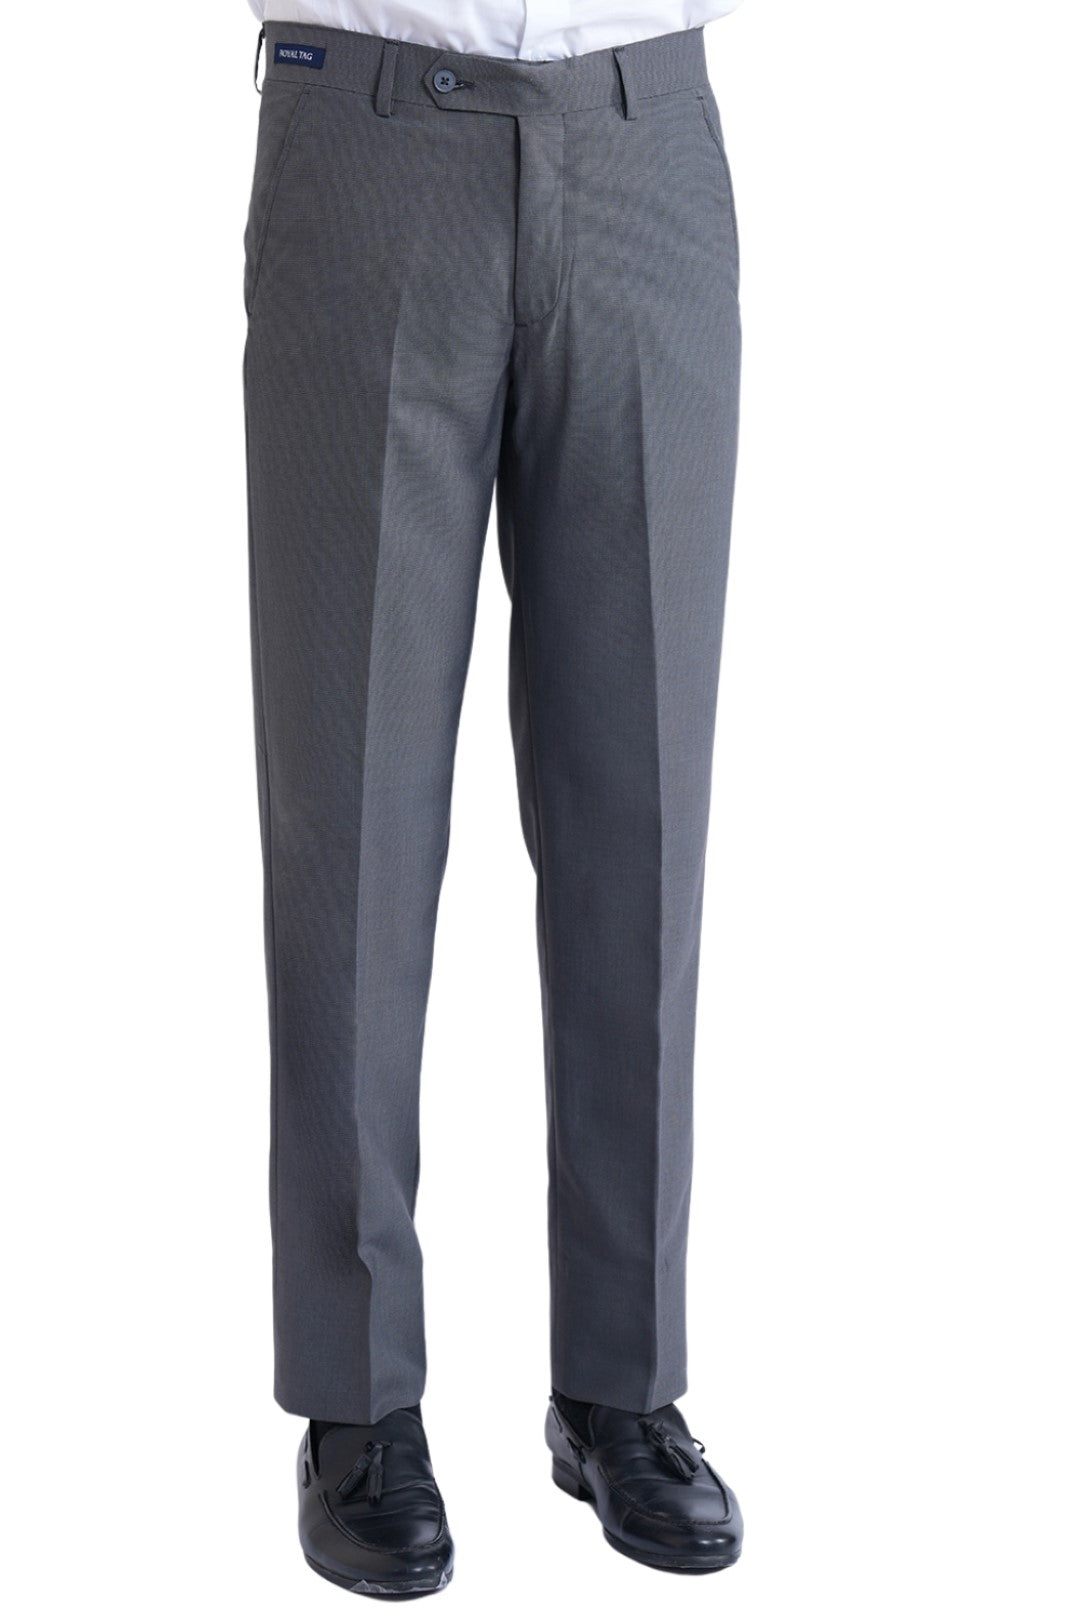 Grey Textured Dress Pant SDP240204-GR